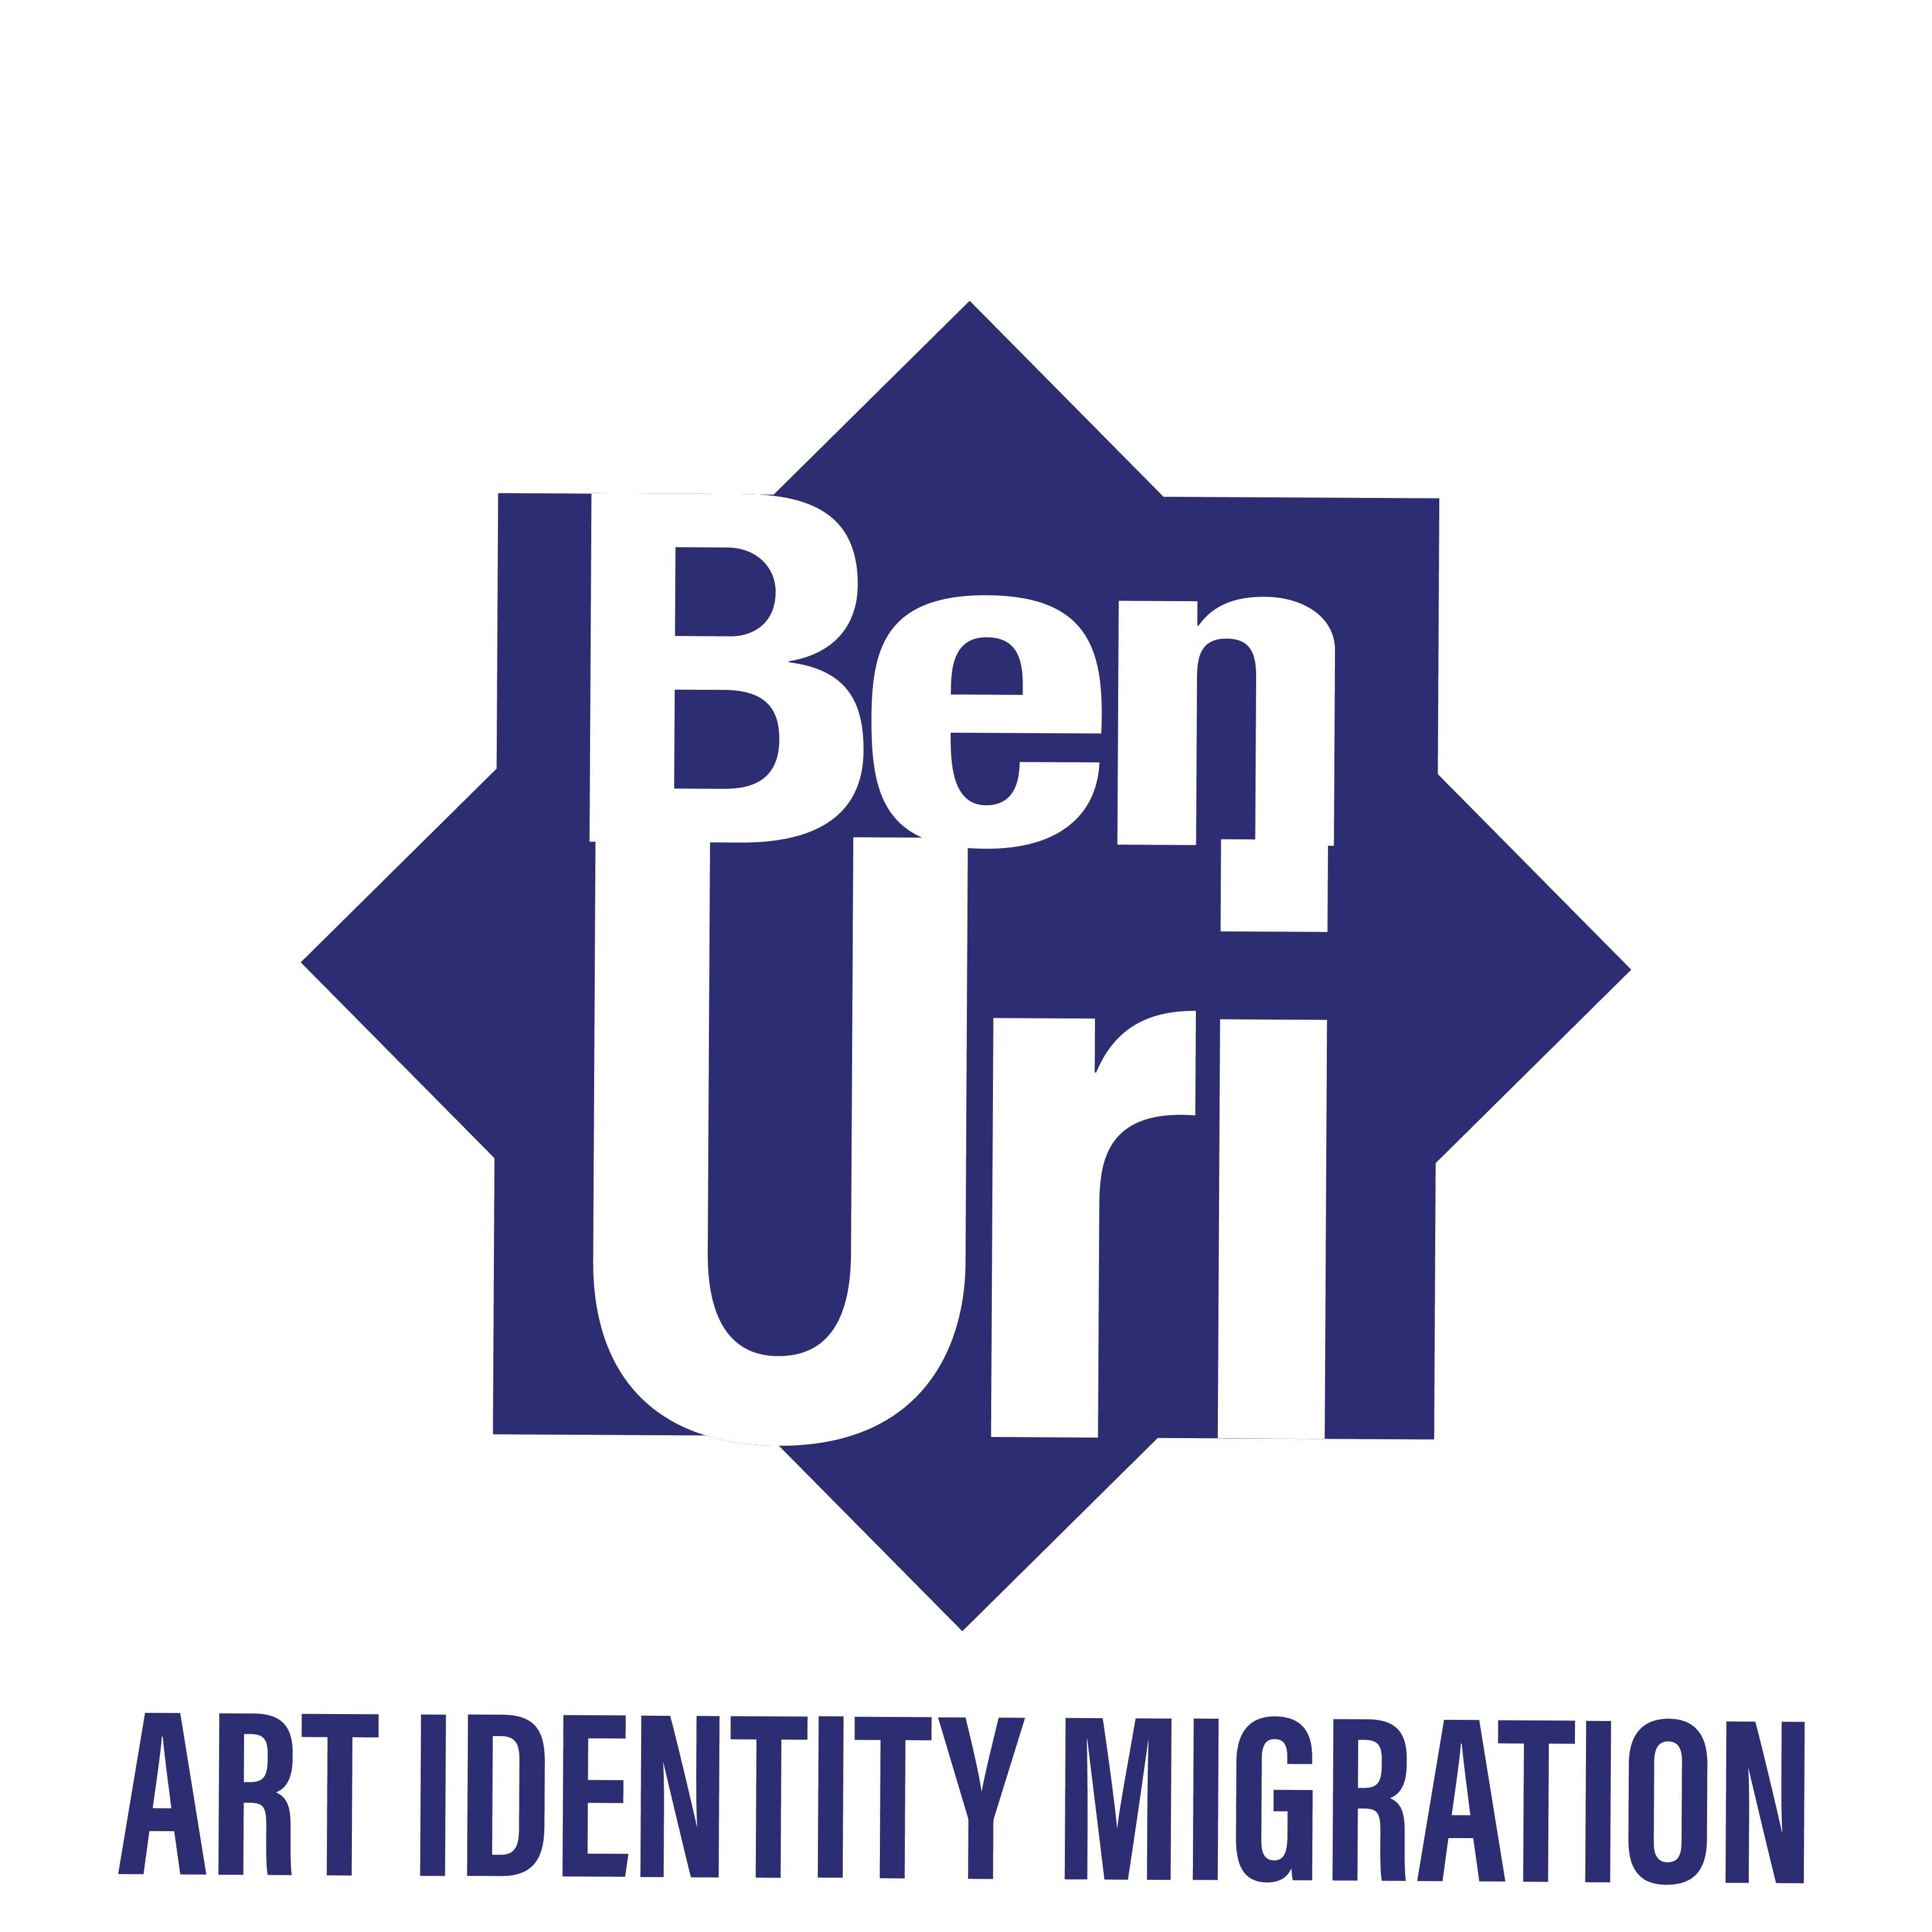 Art, Identity, Migration Logo(1)